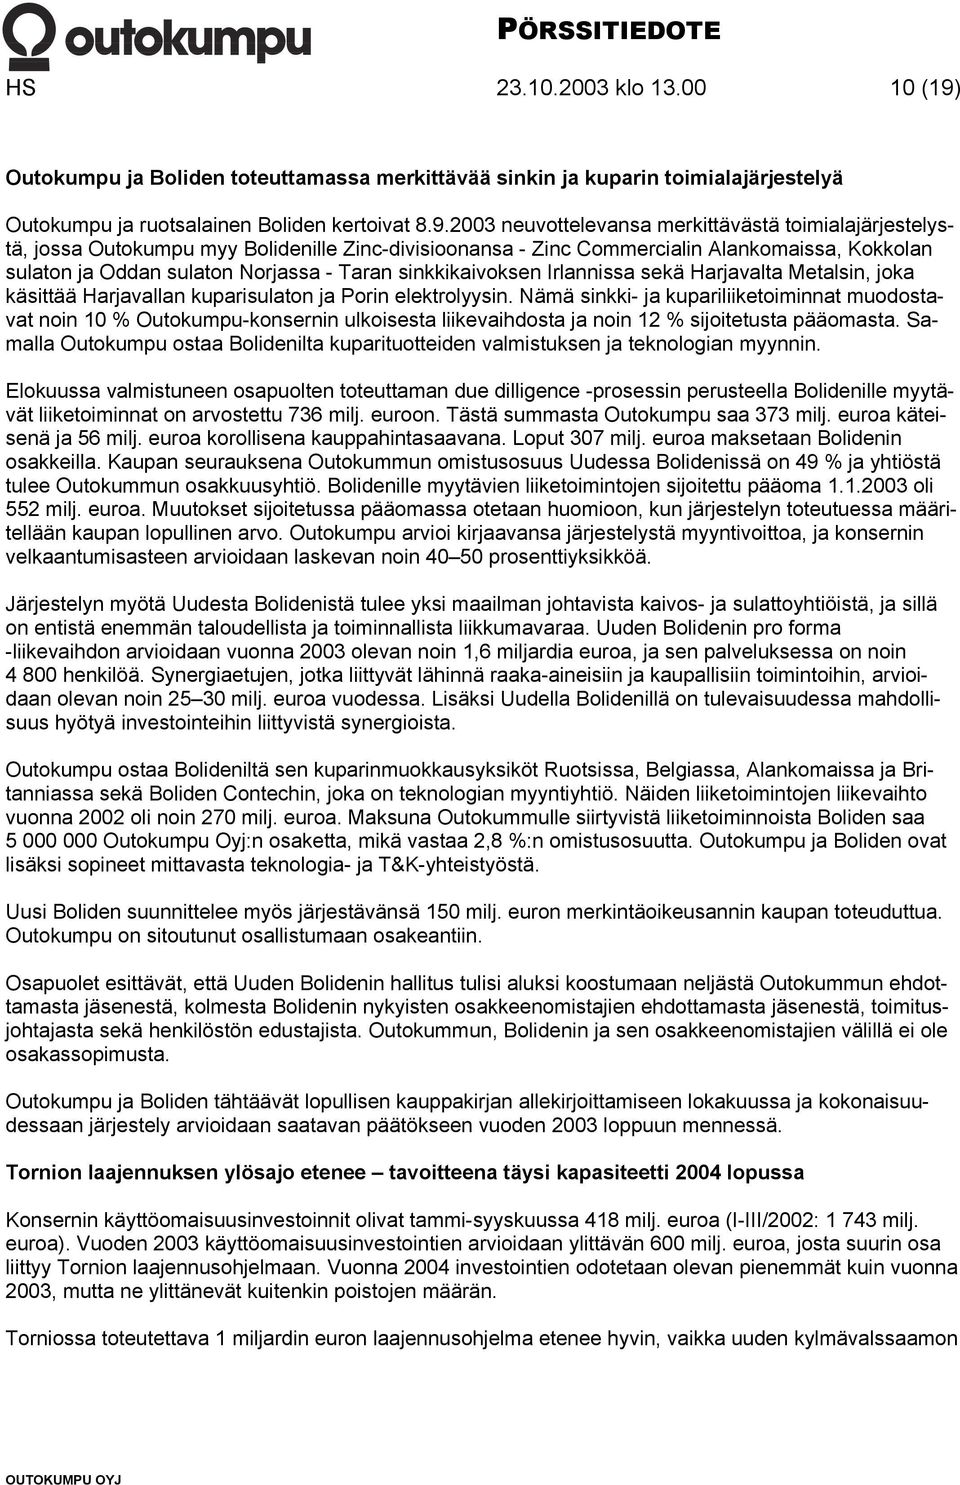 2003 neuvottelevansa merkittävästä toimialajärjestelystä, jossa Outokumpu myy Bolidenille Zinc-divisioonansa - Zinc Commercialin Alankomaissa, Kokkolan sulaton ja Oddan sulaton Norjassa - Taran